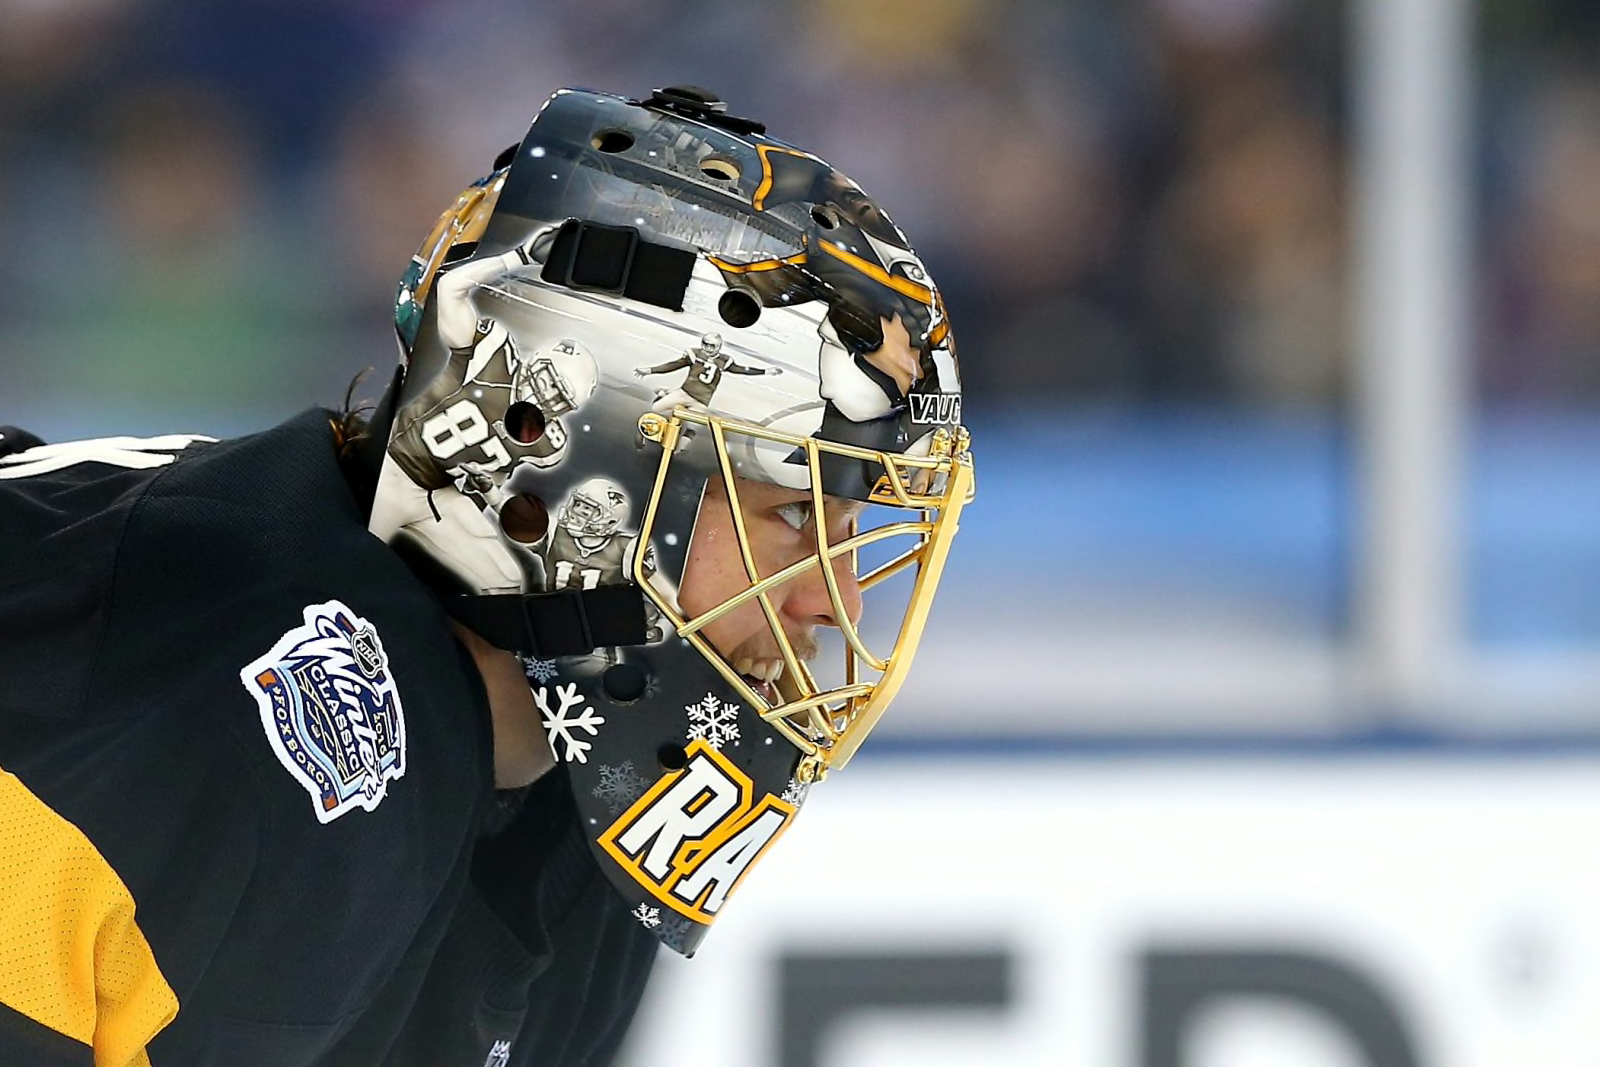 2019 NHL Winter Classic: Bruins' Tuukka Rask had custom helmet